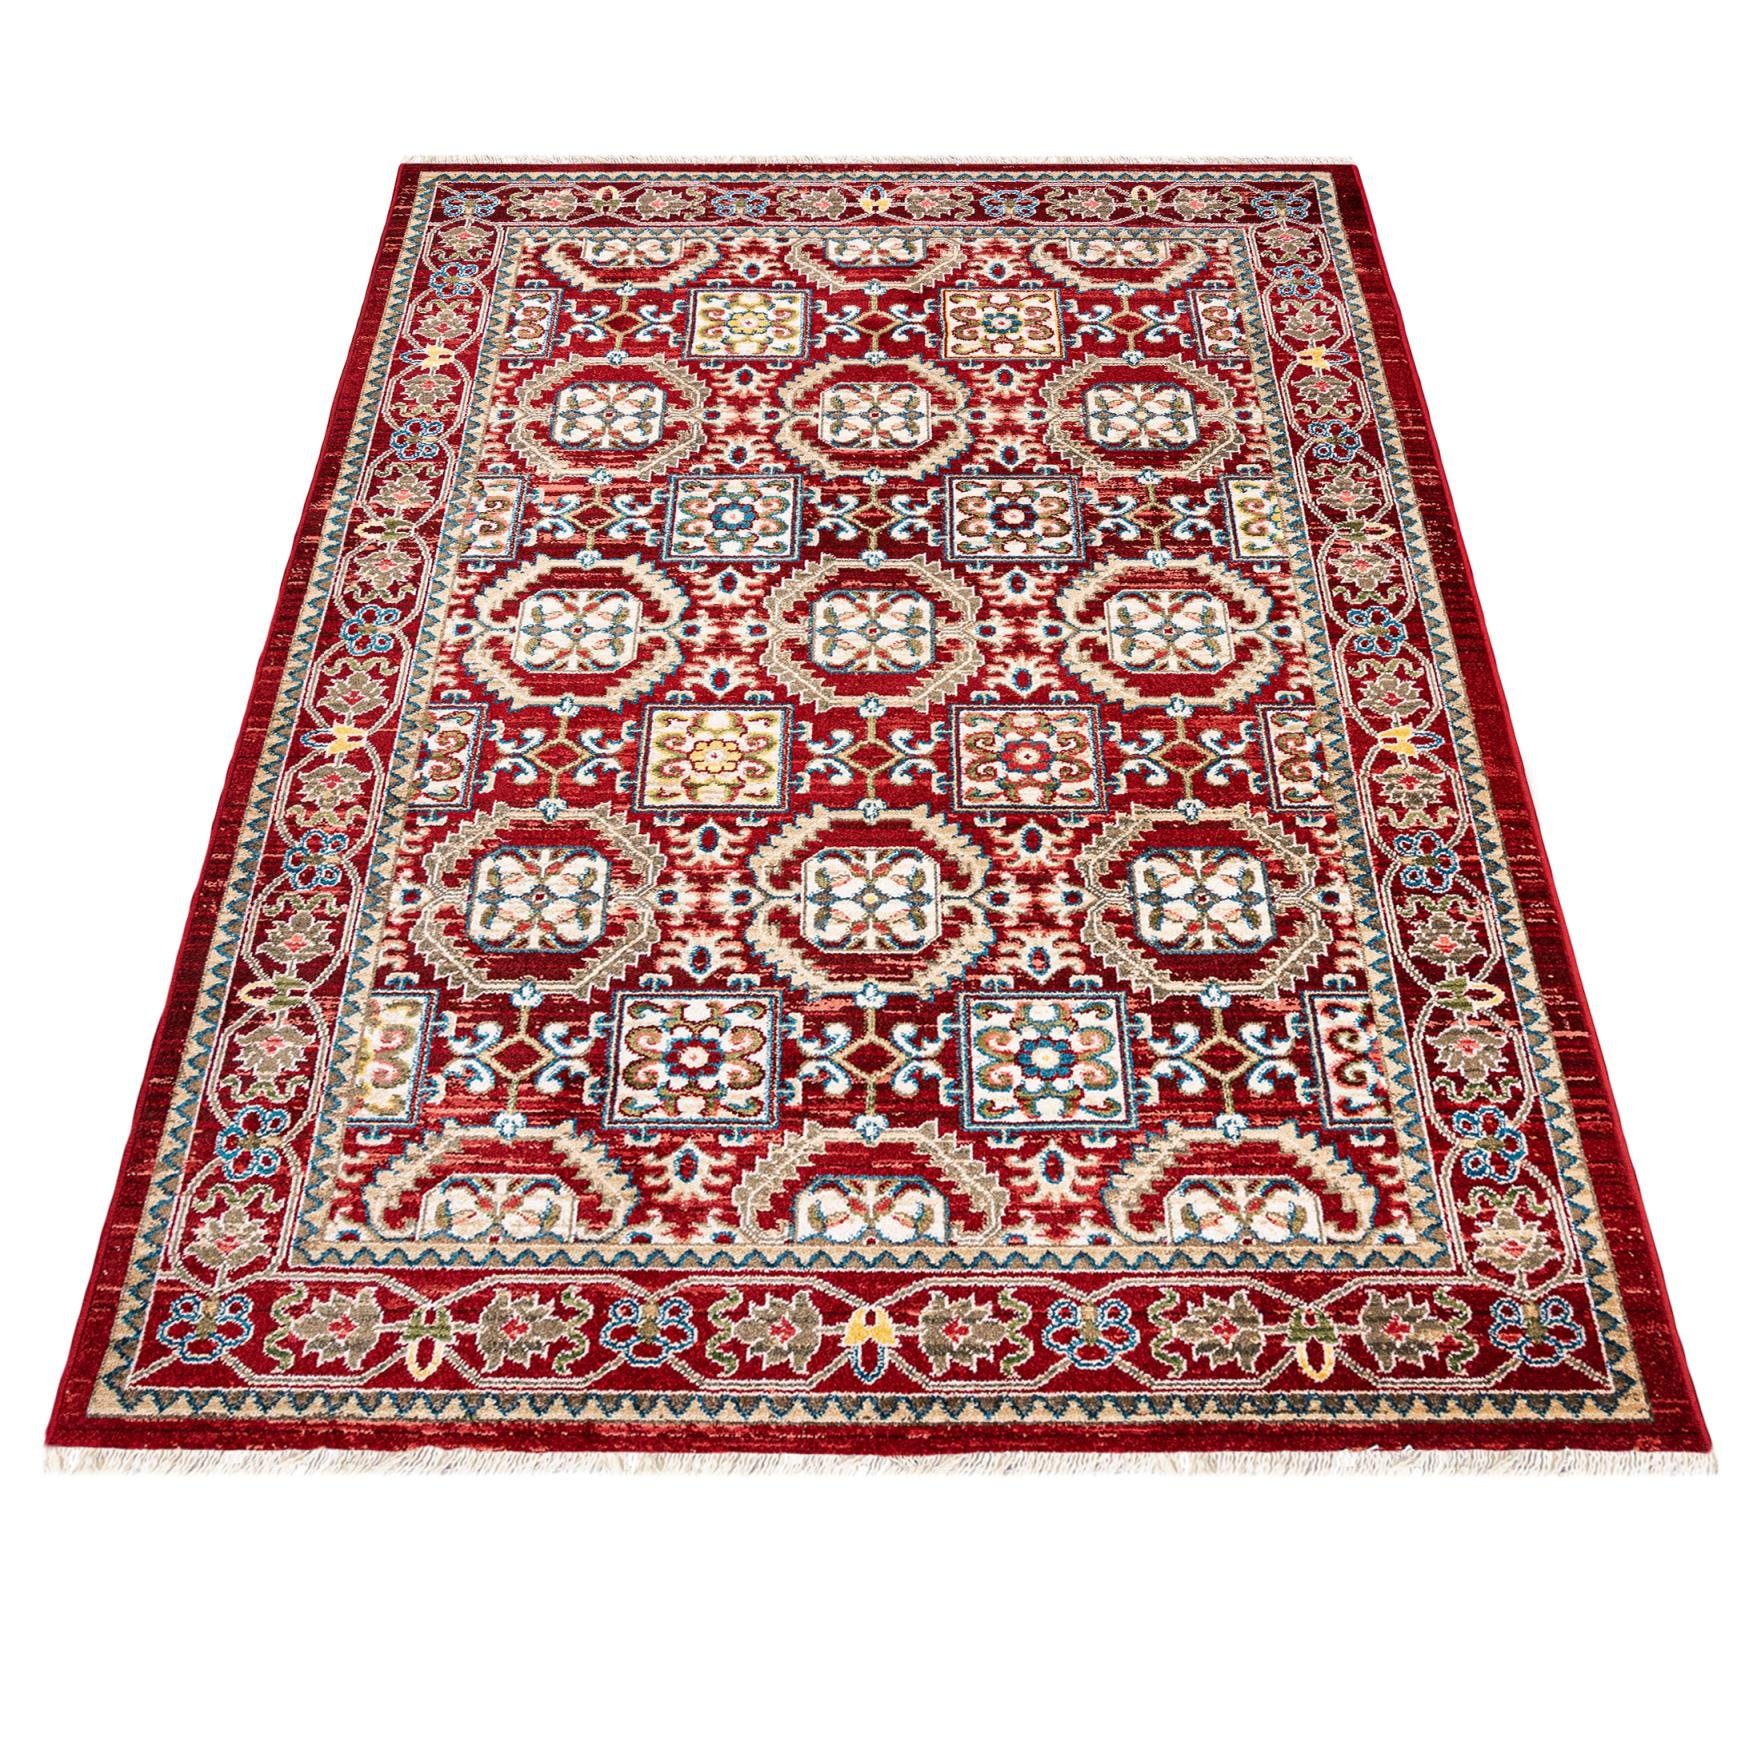 cm, Rot, Traditioneller Pflegeleicht, 170 Teppich Teppich Mazovia, für x 120 Oriente - Orientteppich Wohnzimmerteppich Geeignet Orient Fußbodenheizung,